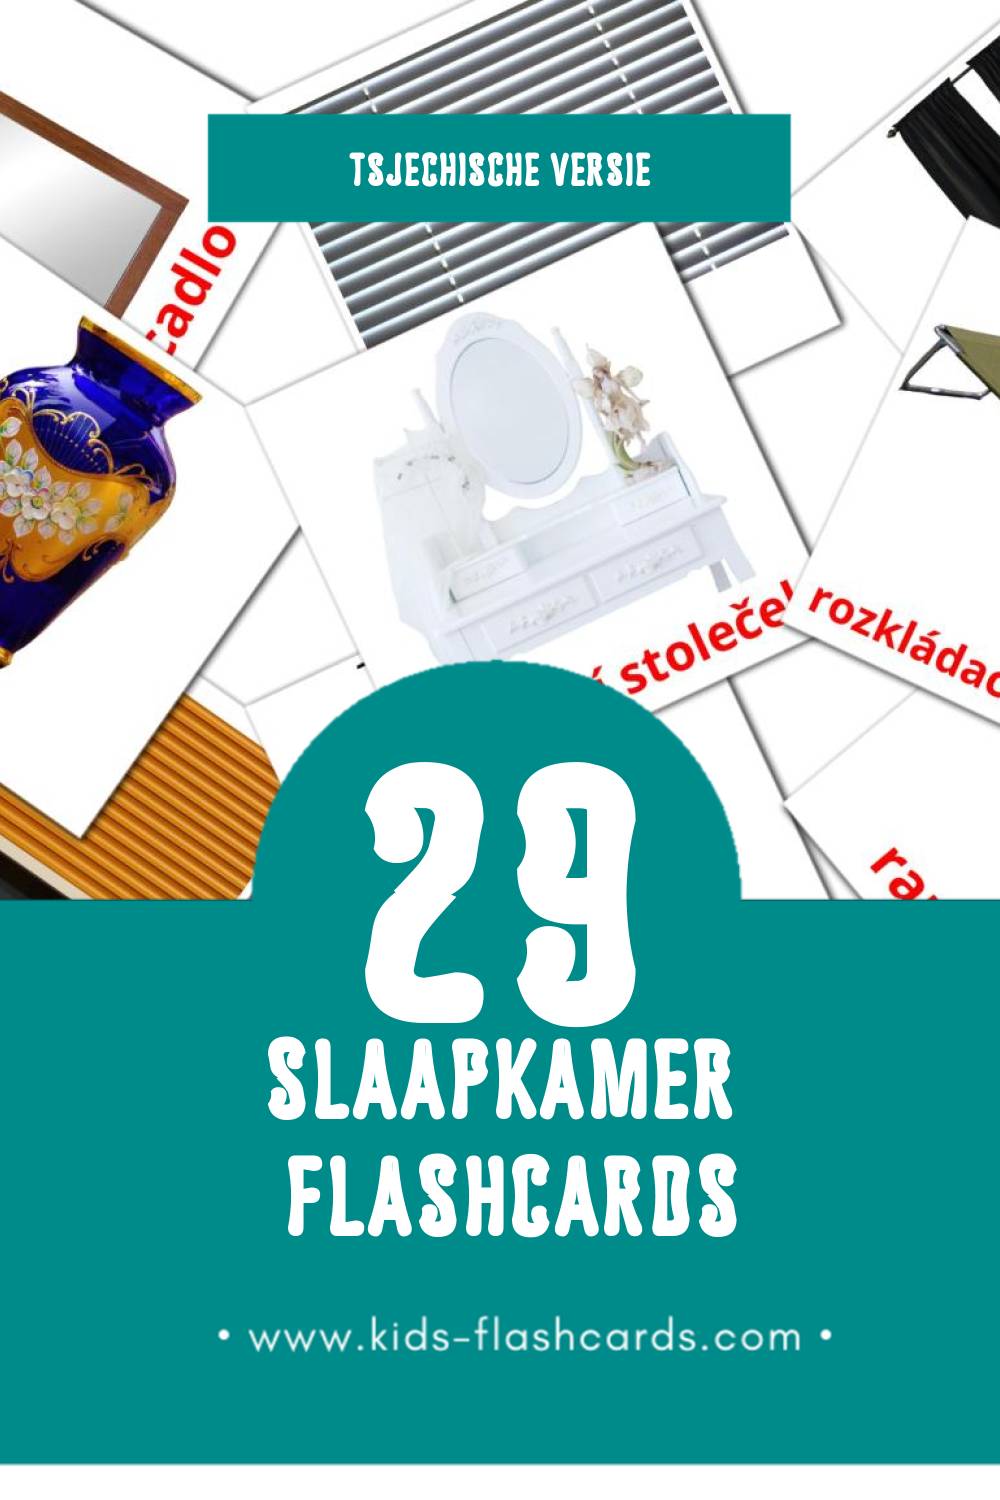 Visuele Ložnicel Flashcards voor Kleuters (29 kaarten in het Tsjechisch)